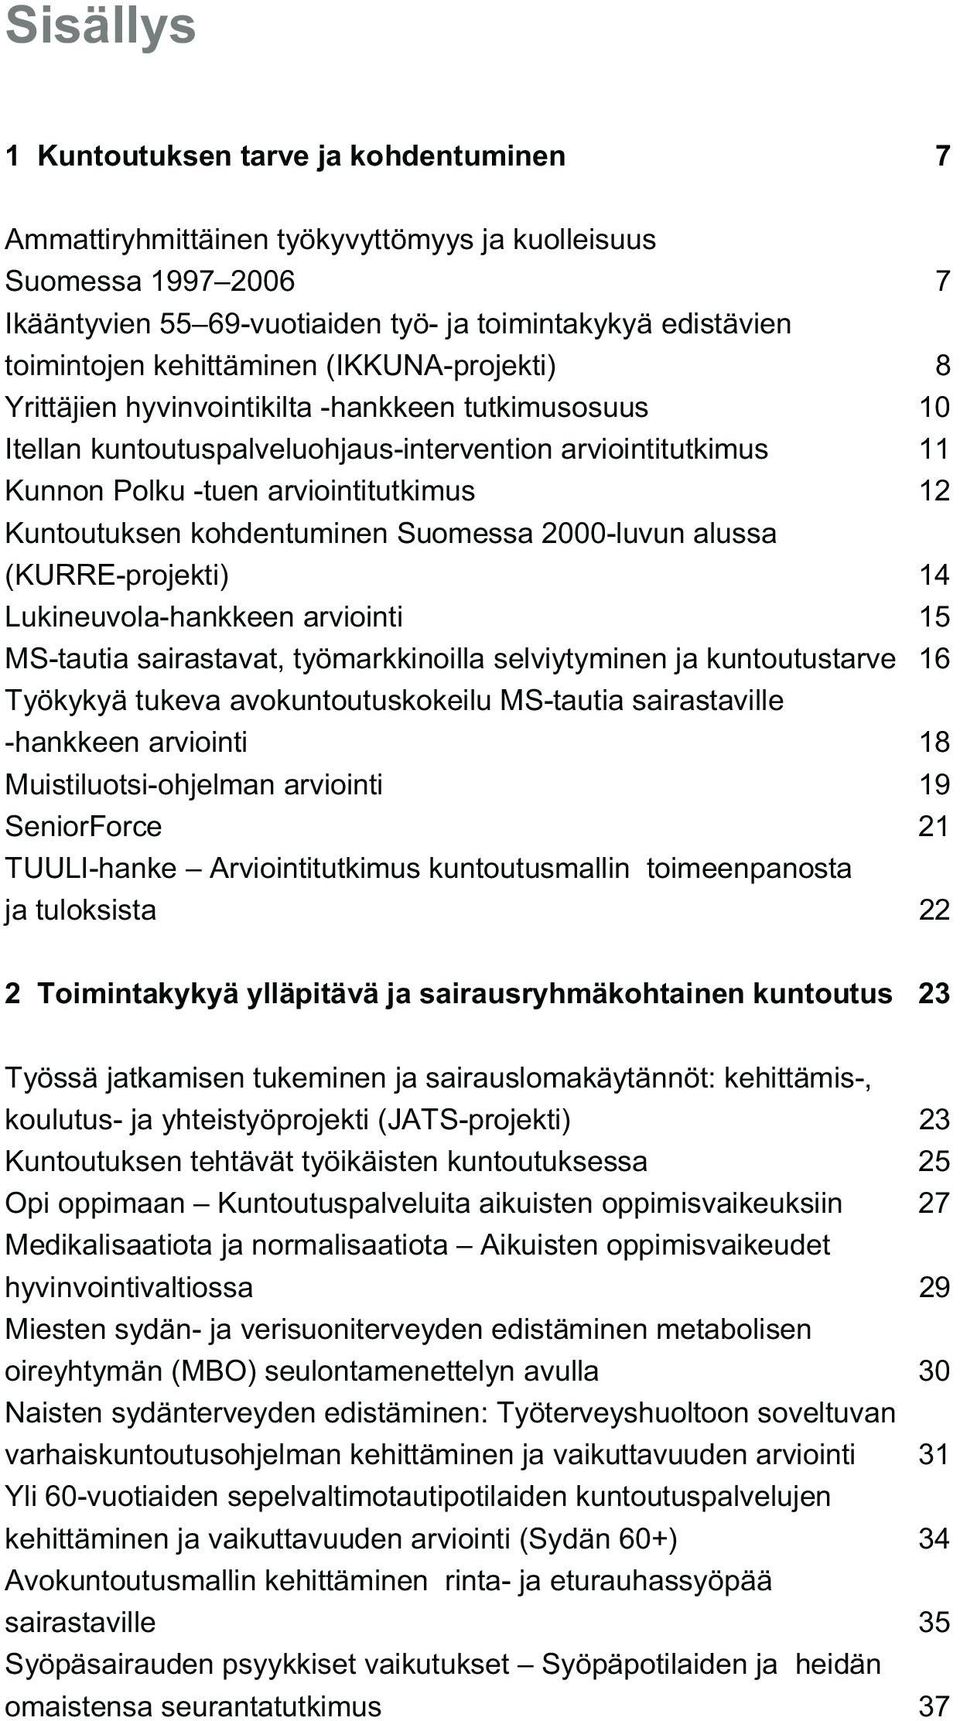 Kuntoutuksen kohdentuminen Suomessa 2000-luvun alussa (KURRE-projekti) 14 Lukineuvola-hankkeen arviointi 15 MS-tautia sairastavat, työmarkkinoilla selviytyminen ja kuntoutustarve 16 Työkykyä tukeva